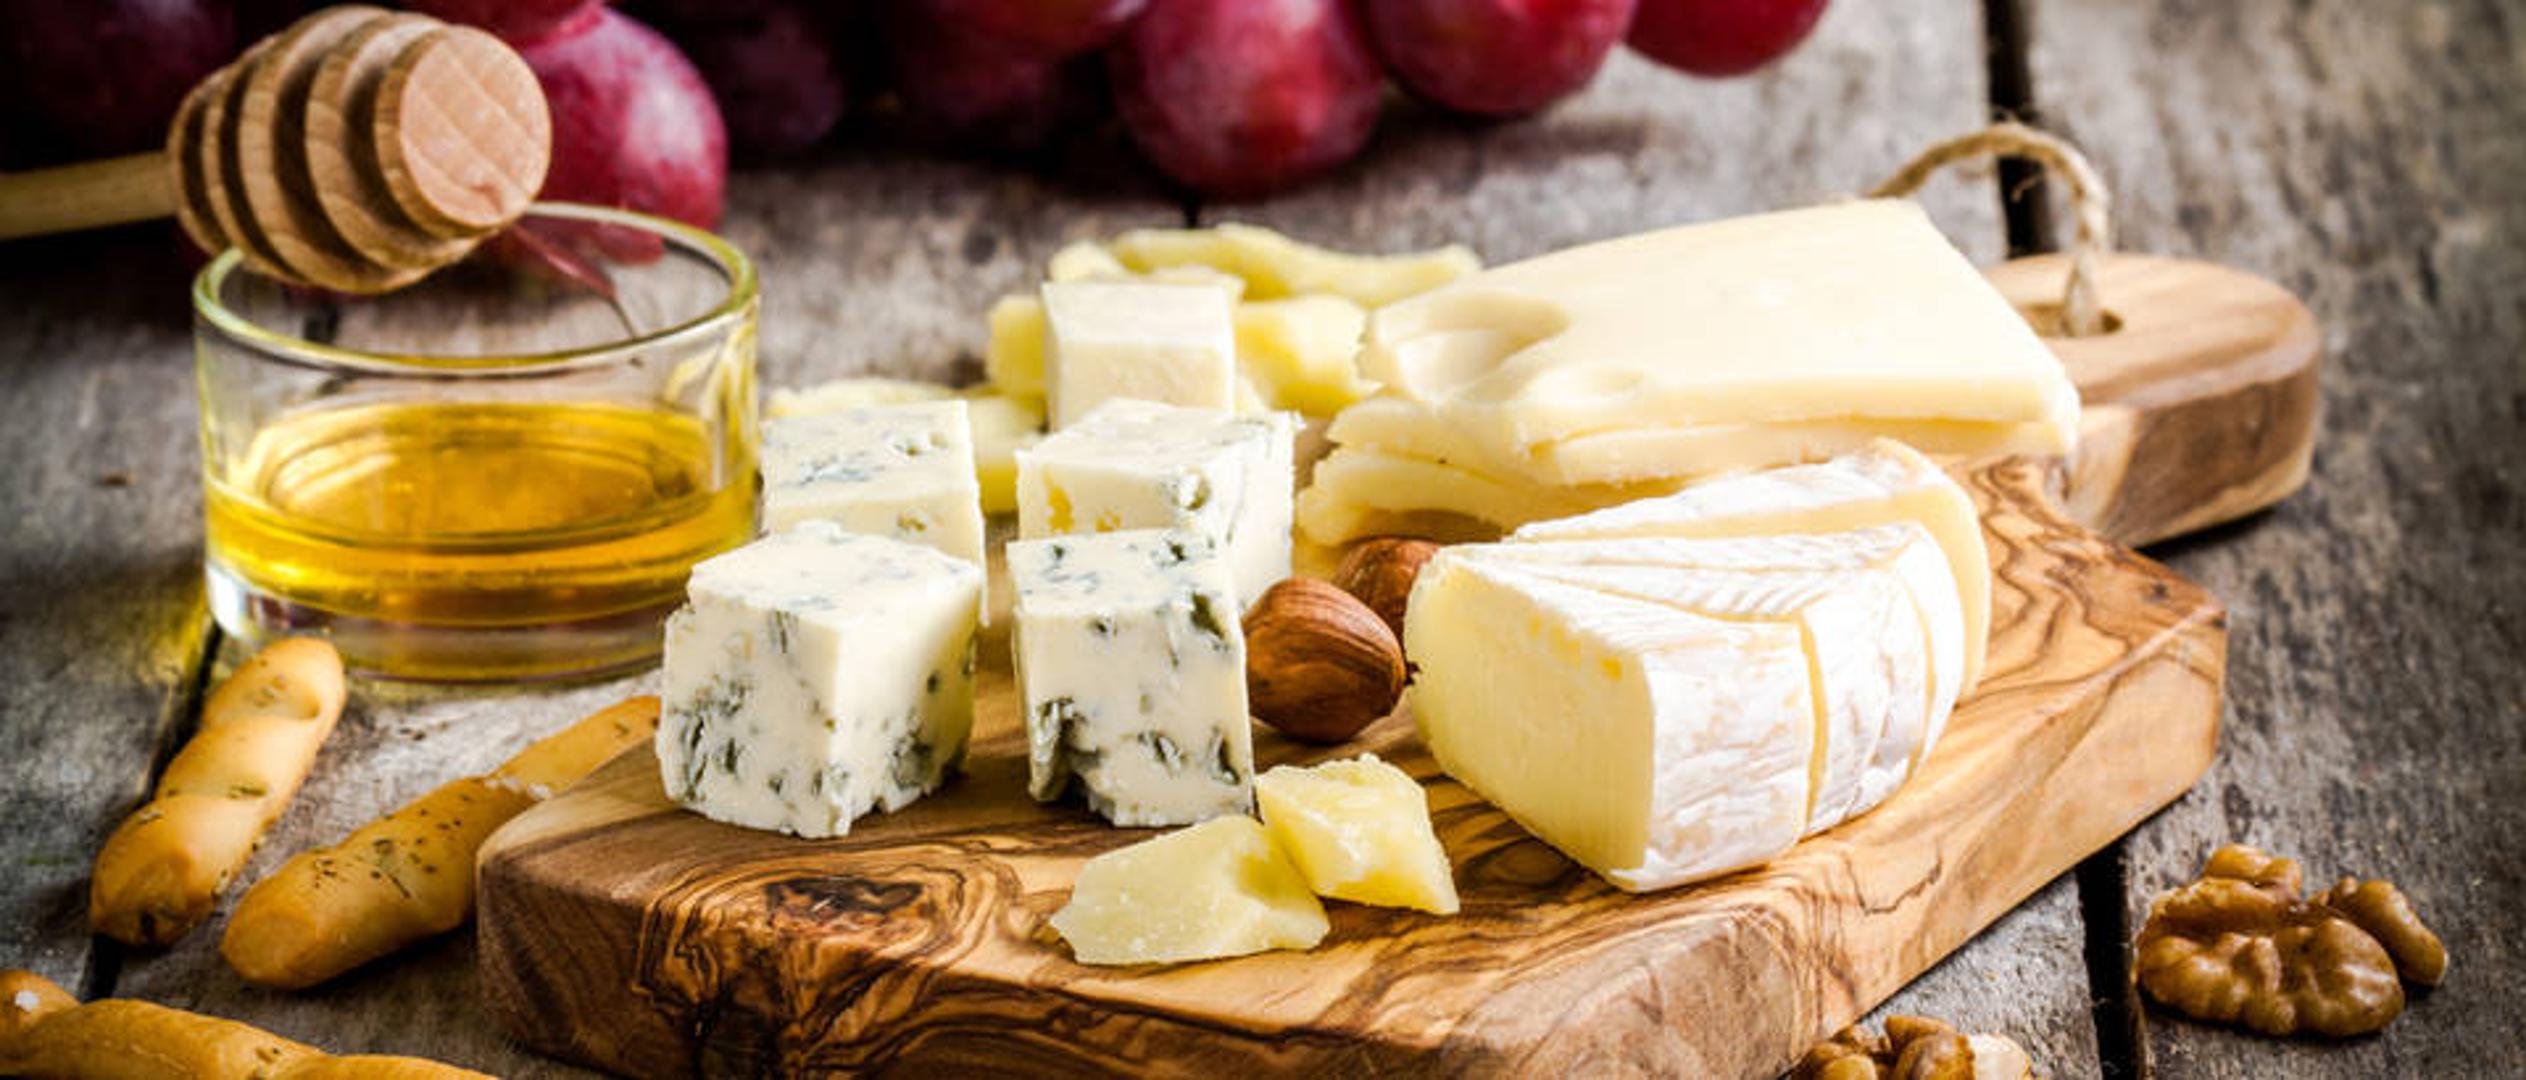 Švapski sir – Osim što sadrži 20 mikrograma selena, ima i 103 mg kalcija zbog čega je odličan izvor tog minerala neophodnog za život.